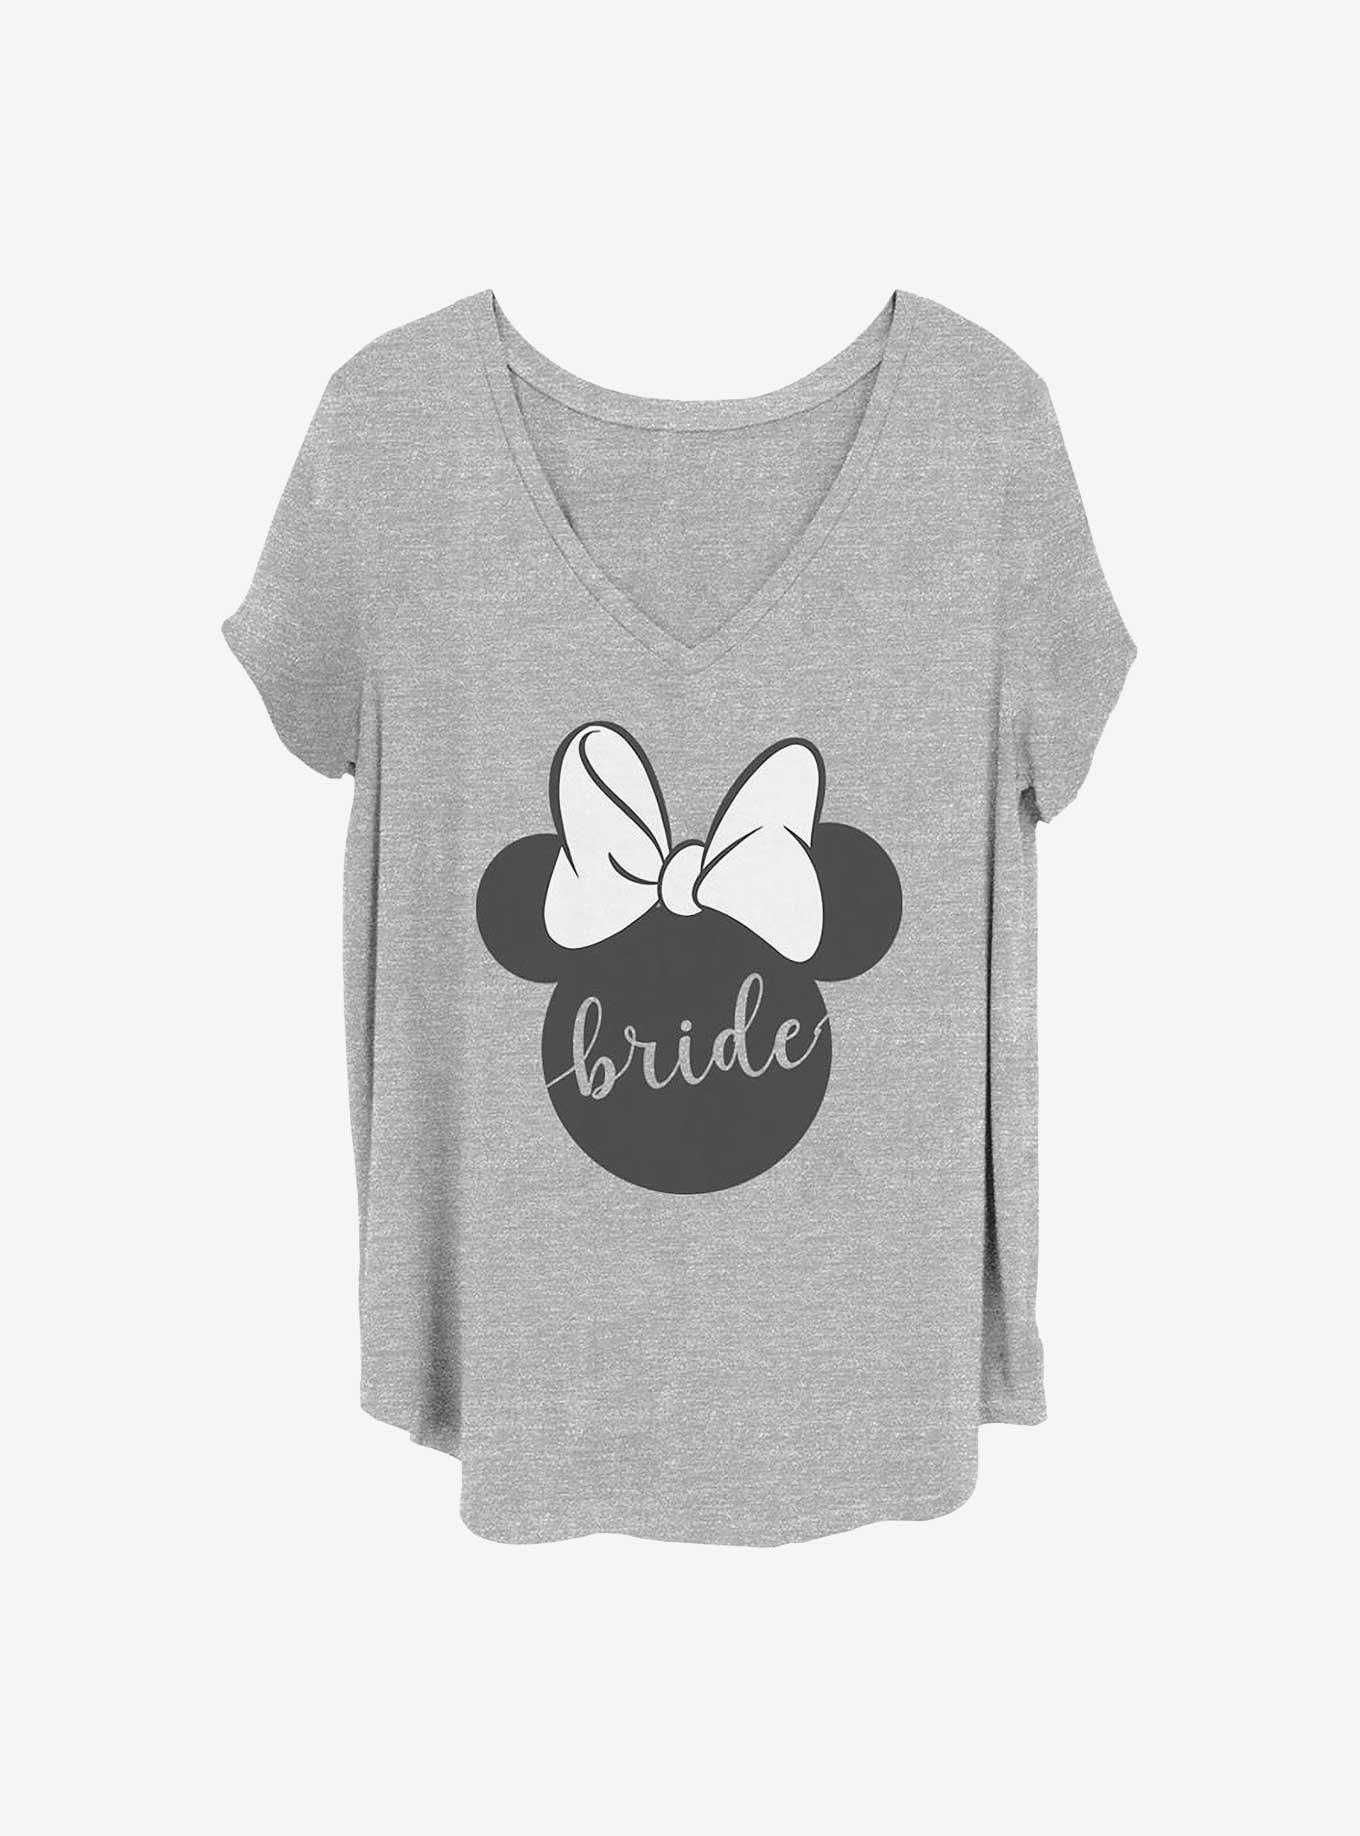 Disney Minnie Mouse Bow Bride Girls T-Shirt Plus Size, HEATHER GR, hi-res